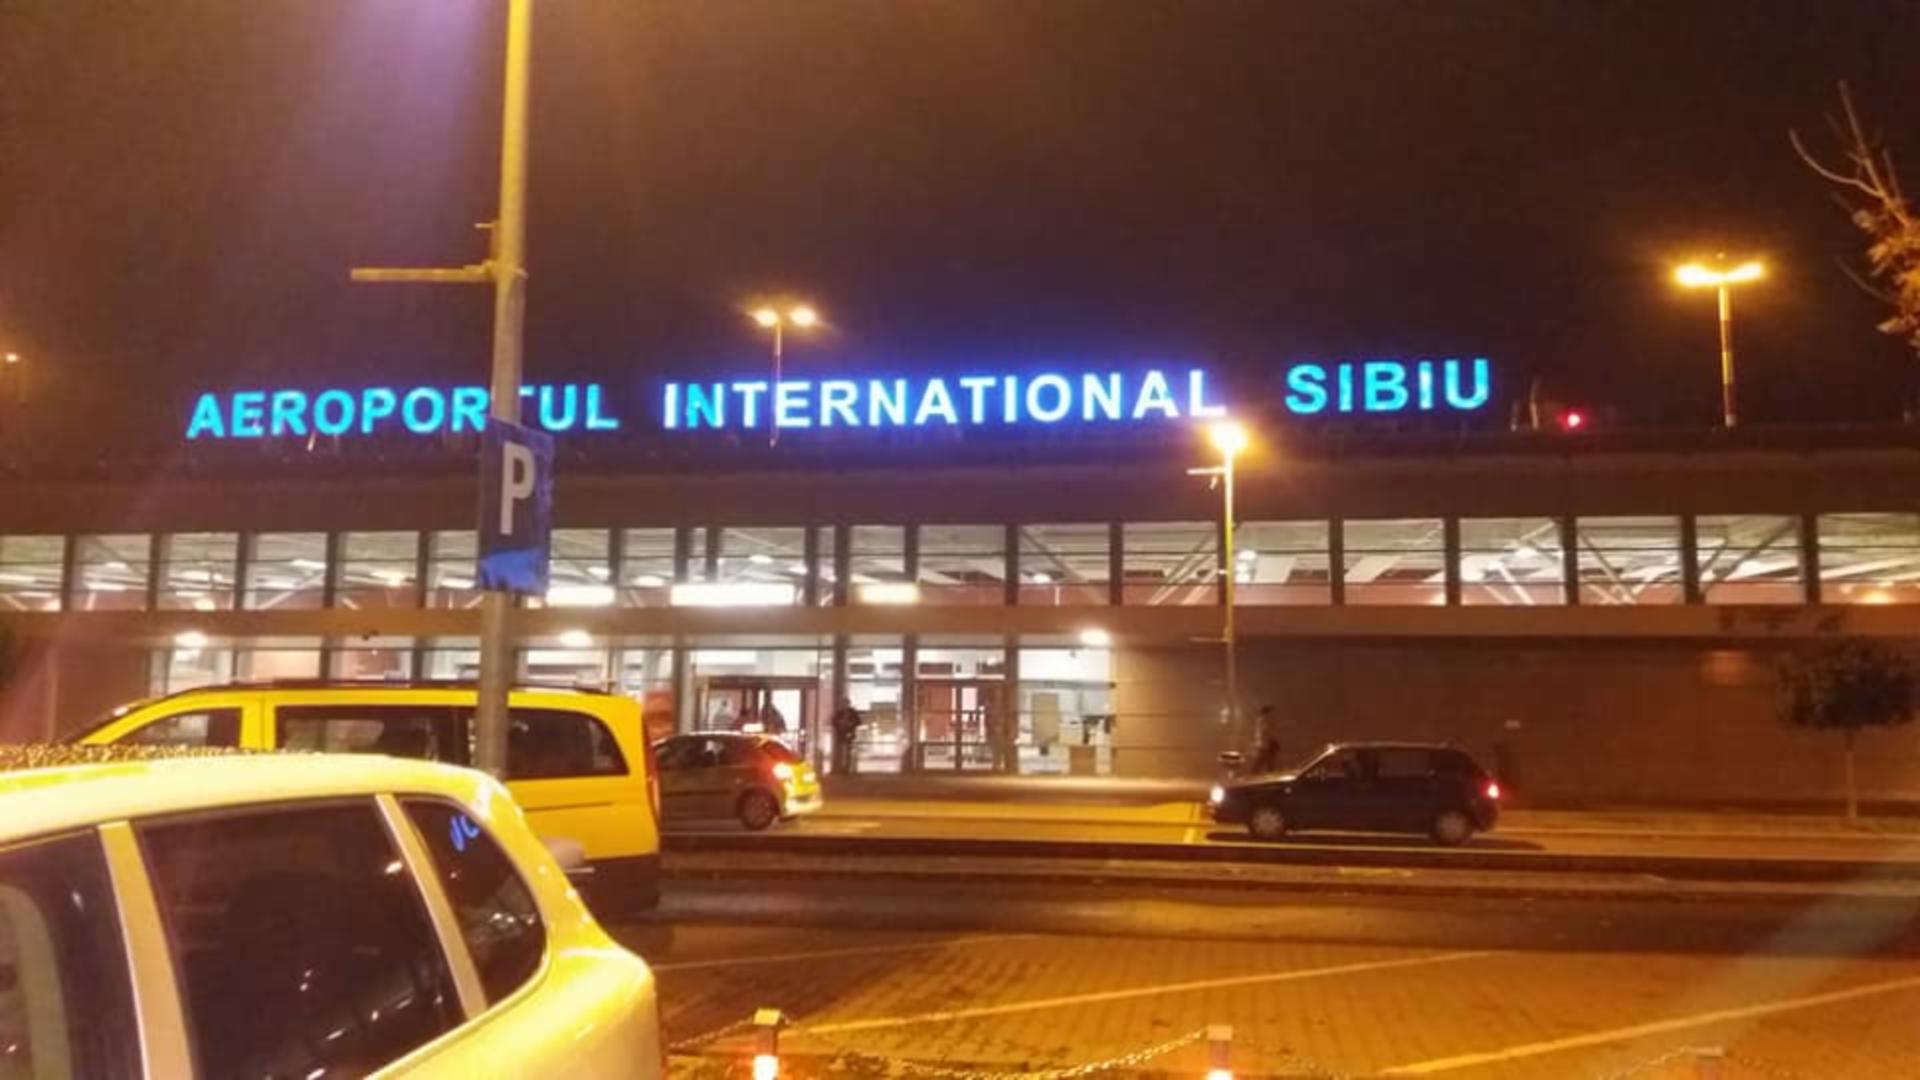  Aeroportul din Sibiu se dotează cu o cameră de ultimă generație. Foto: Facebook